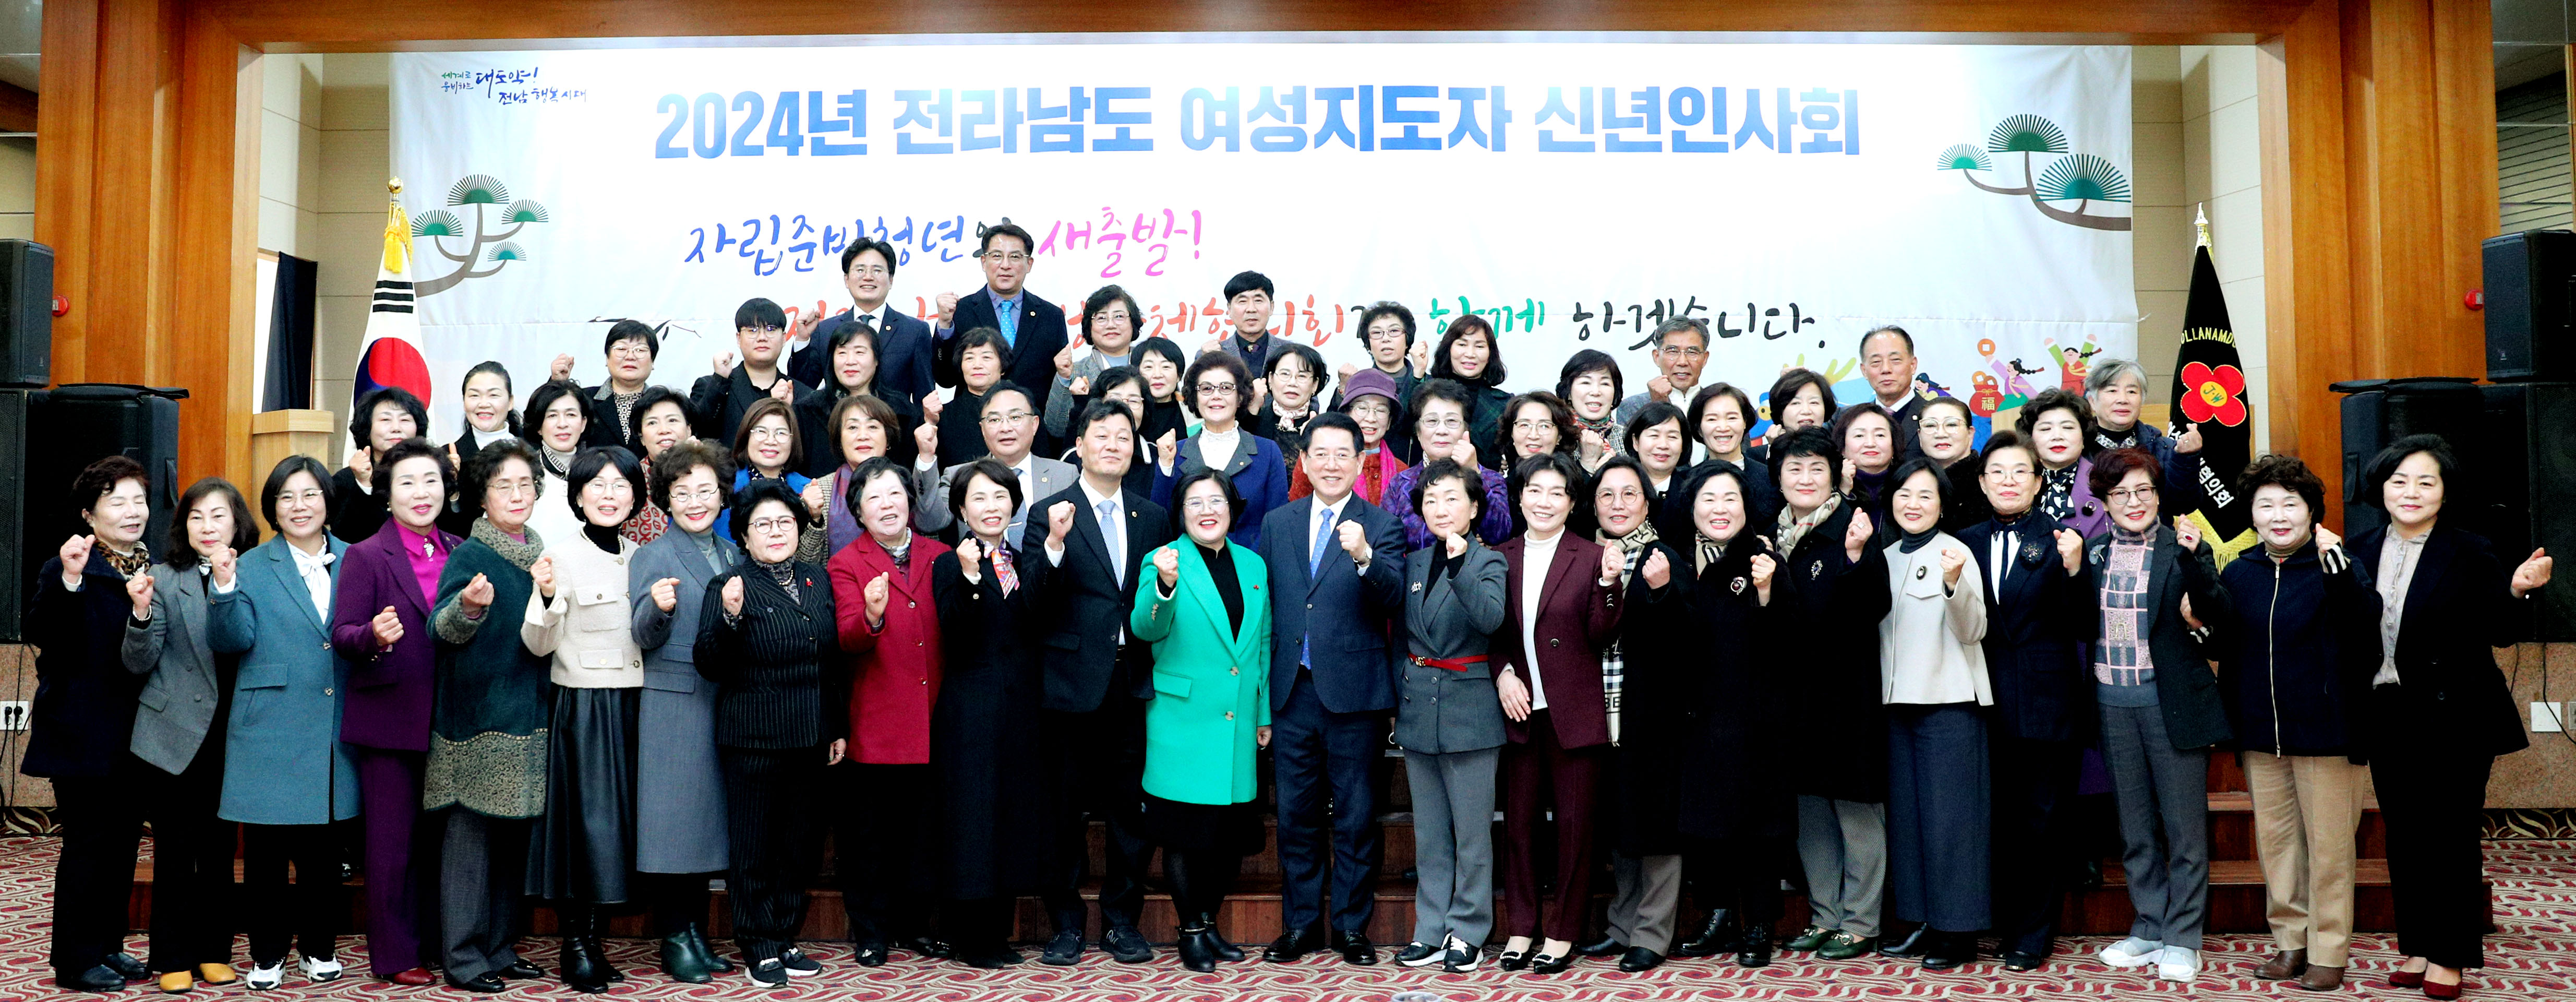 전라남도 여성지도자 신년인사회3